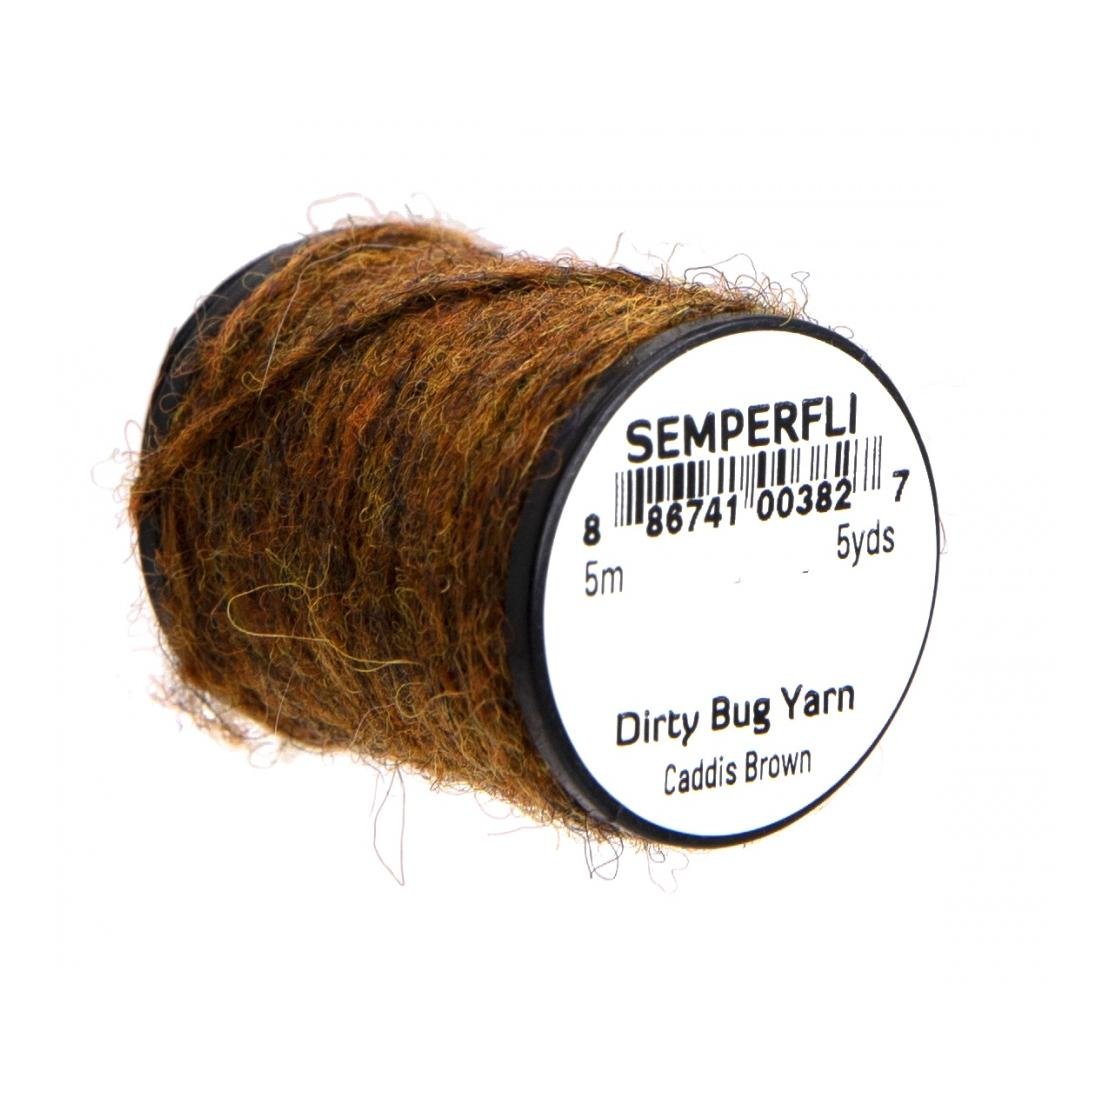 Image of Semperfli Dirty Bug Yarn Caddis Brown bei fischen.ch